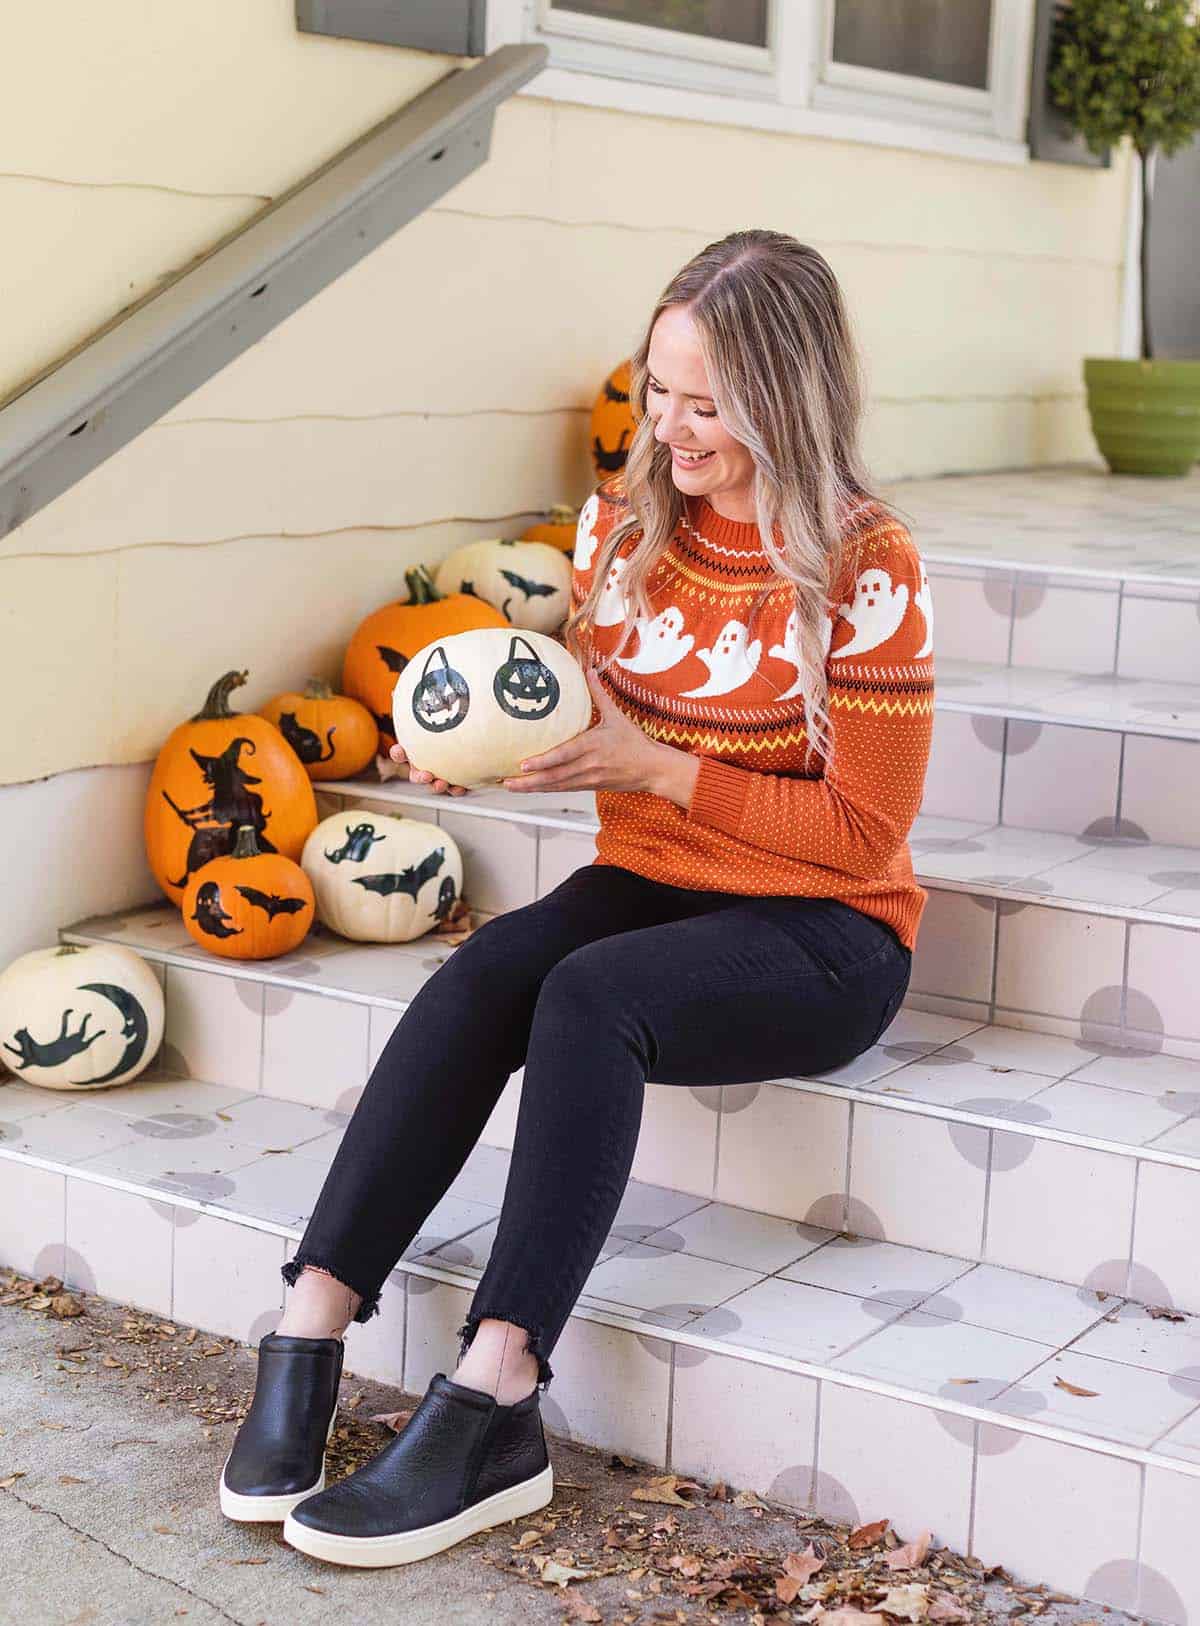 Emma holding a pumpkin